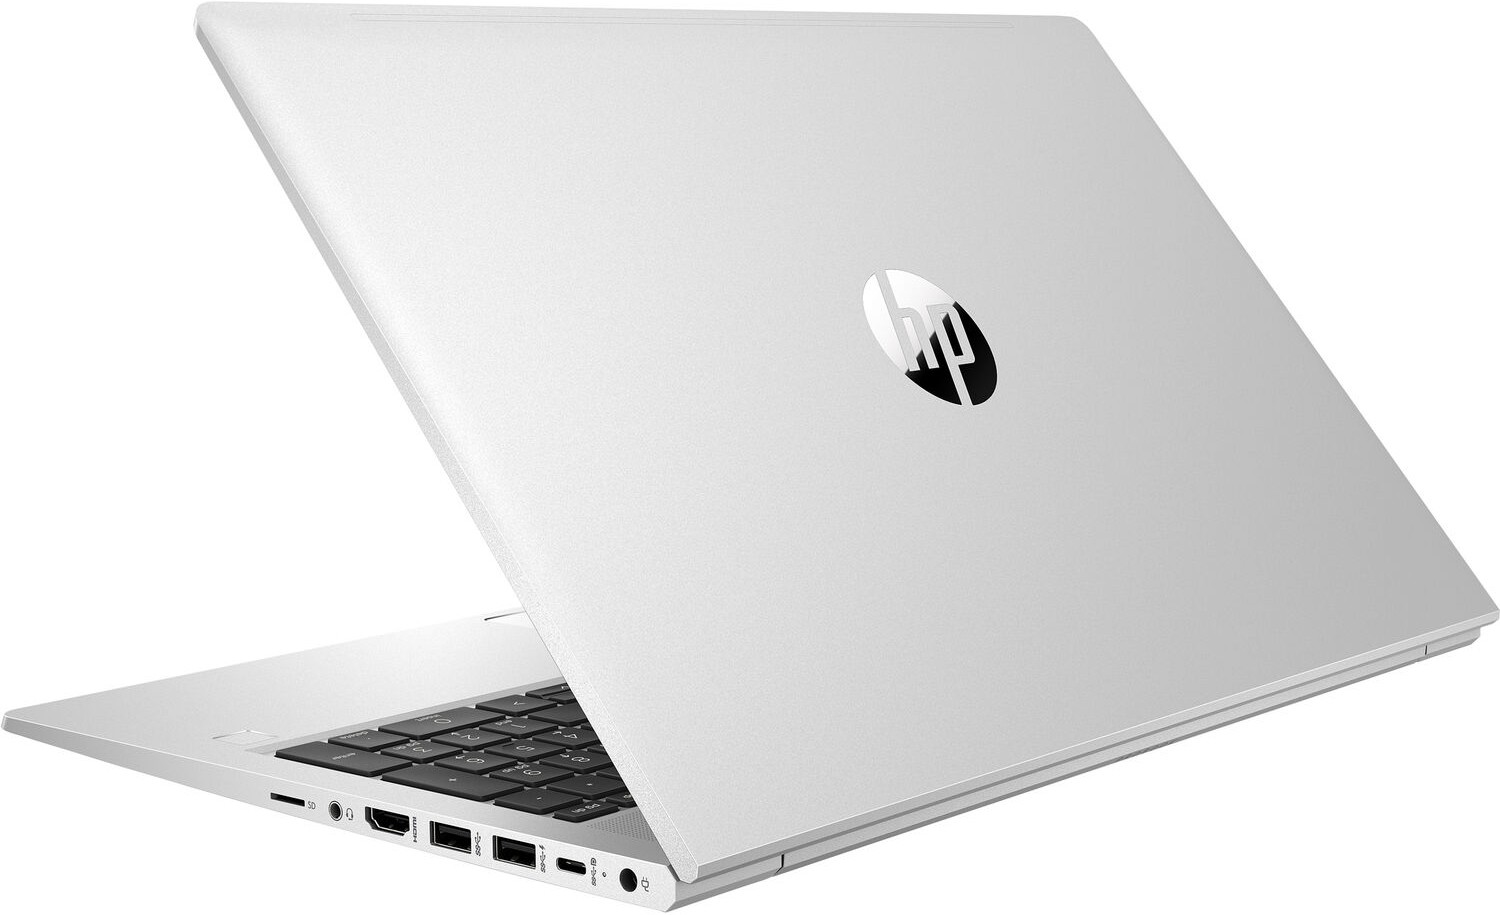 Ноутбук HP ProBook 450 G8 Core i7-1165G7 2.8GHz 15.6" FHD (1920x1080) AG,16Gb DDR4(1),512Gb SSD,45Wh LL,No FPR,1.8kg,1y,Silver,Win10Pro-39434